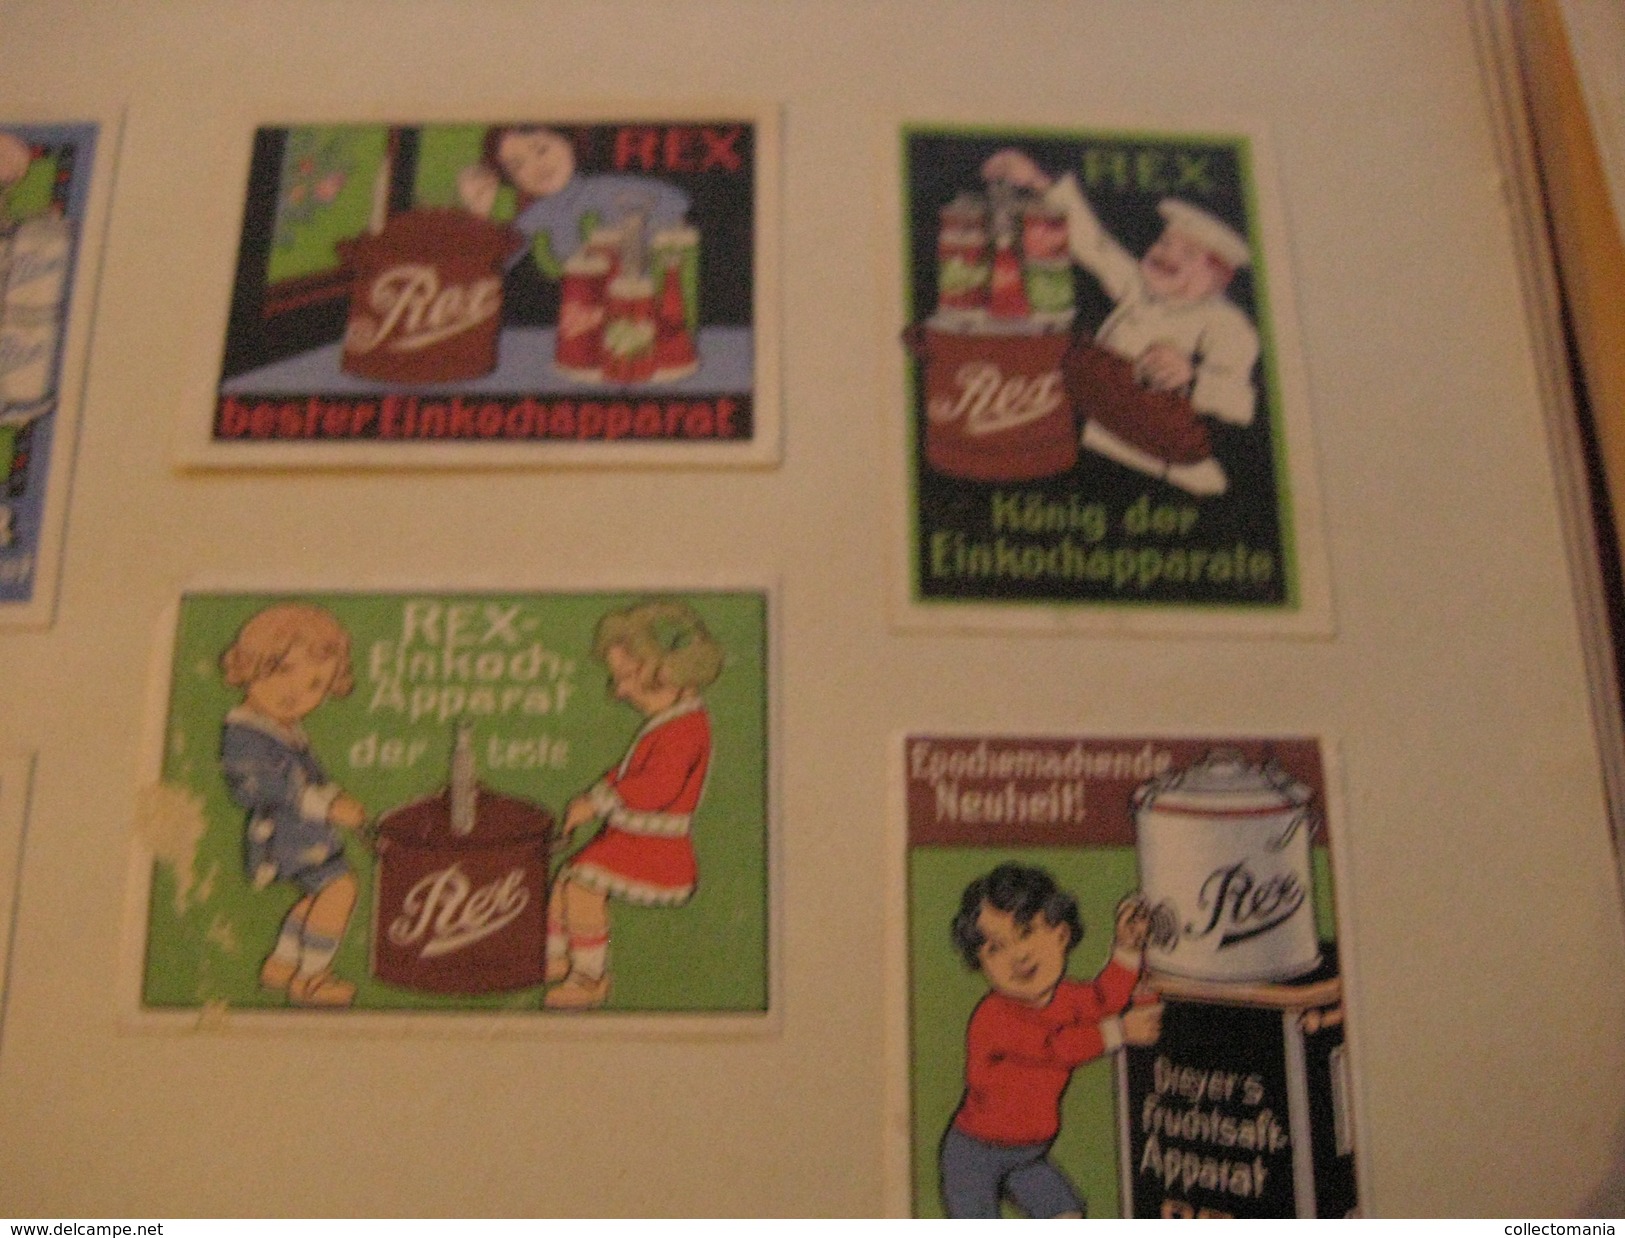 6 Poster Stamp Advertising REX Einkochapparat Conservenglas  DREYER Dreyers's   Litho ART Very Good - Fabriken Und Industrien